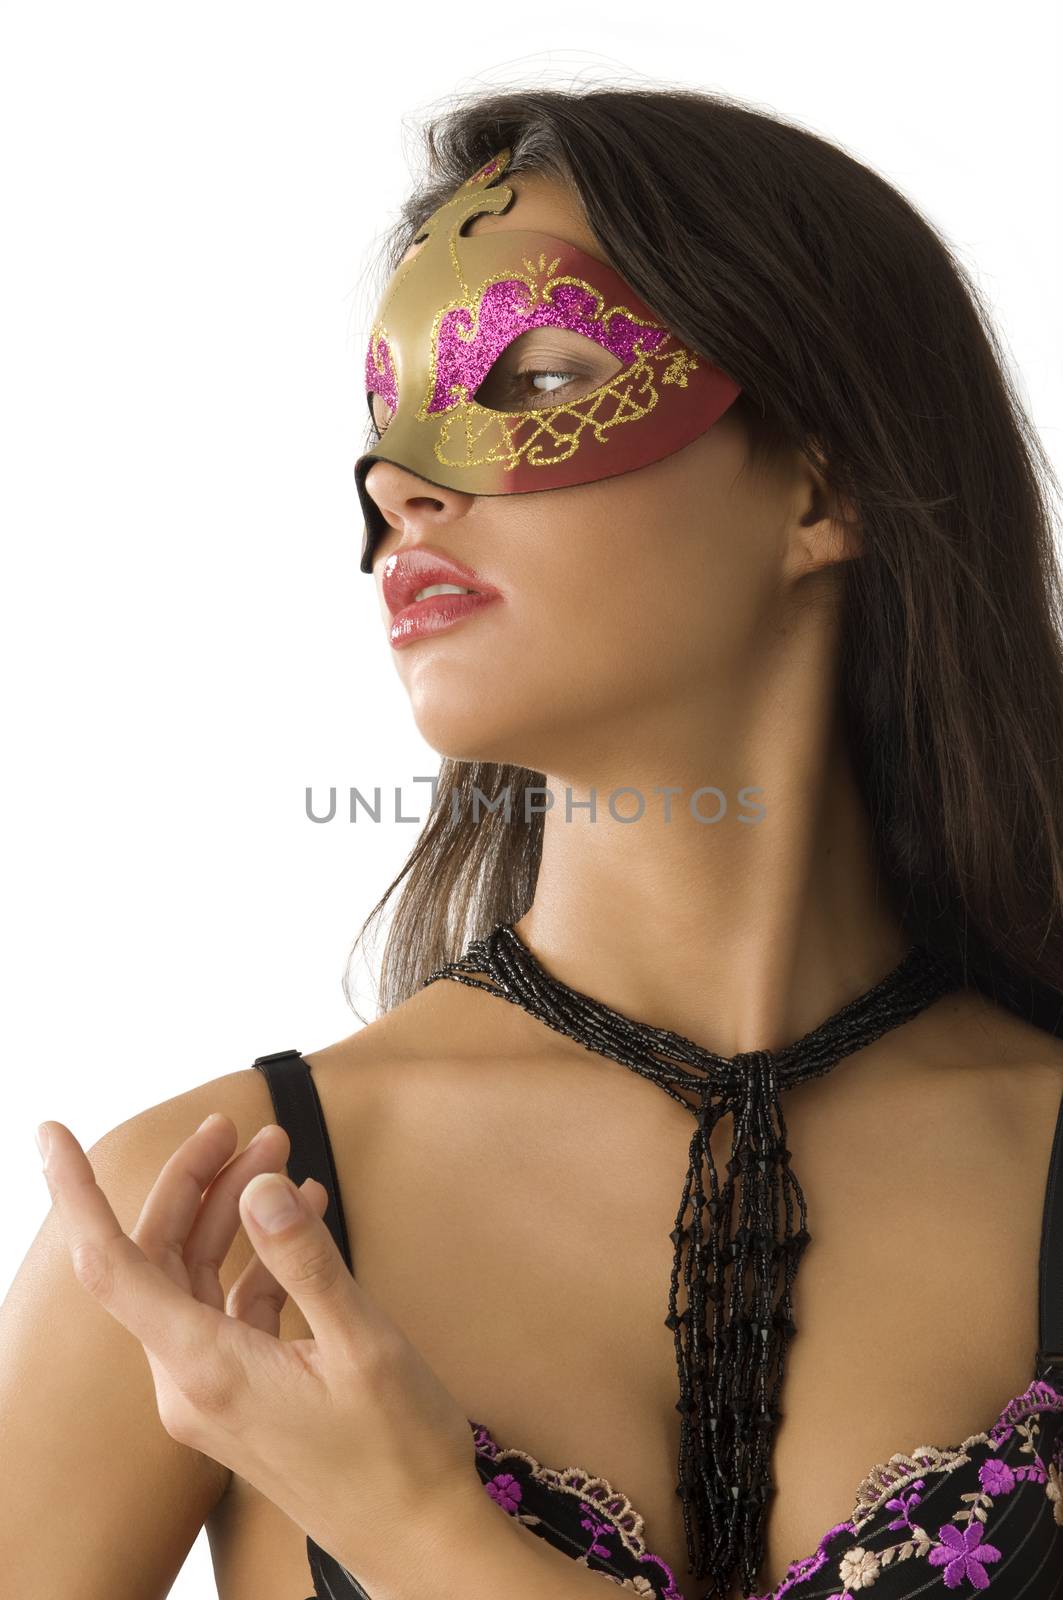 carnival portrait in mask by fotoCD